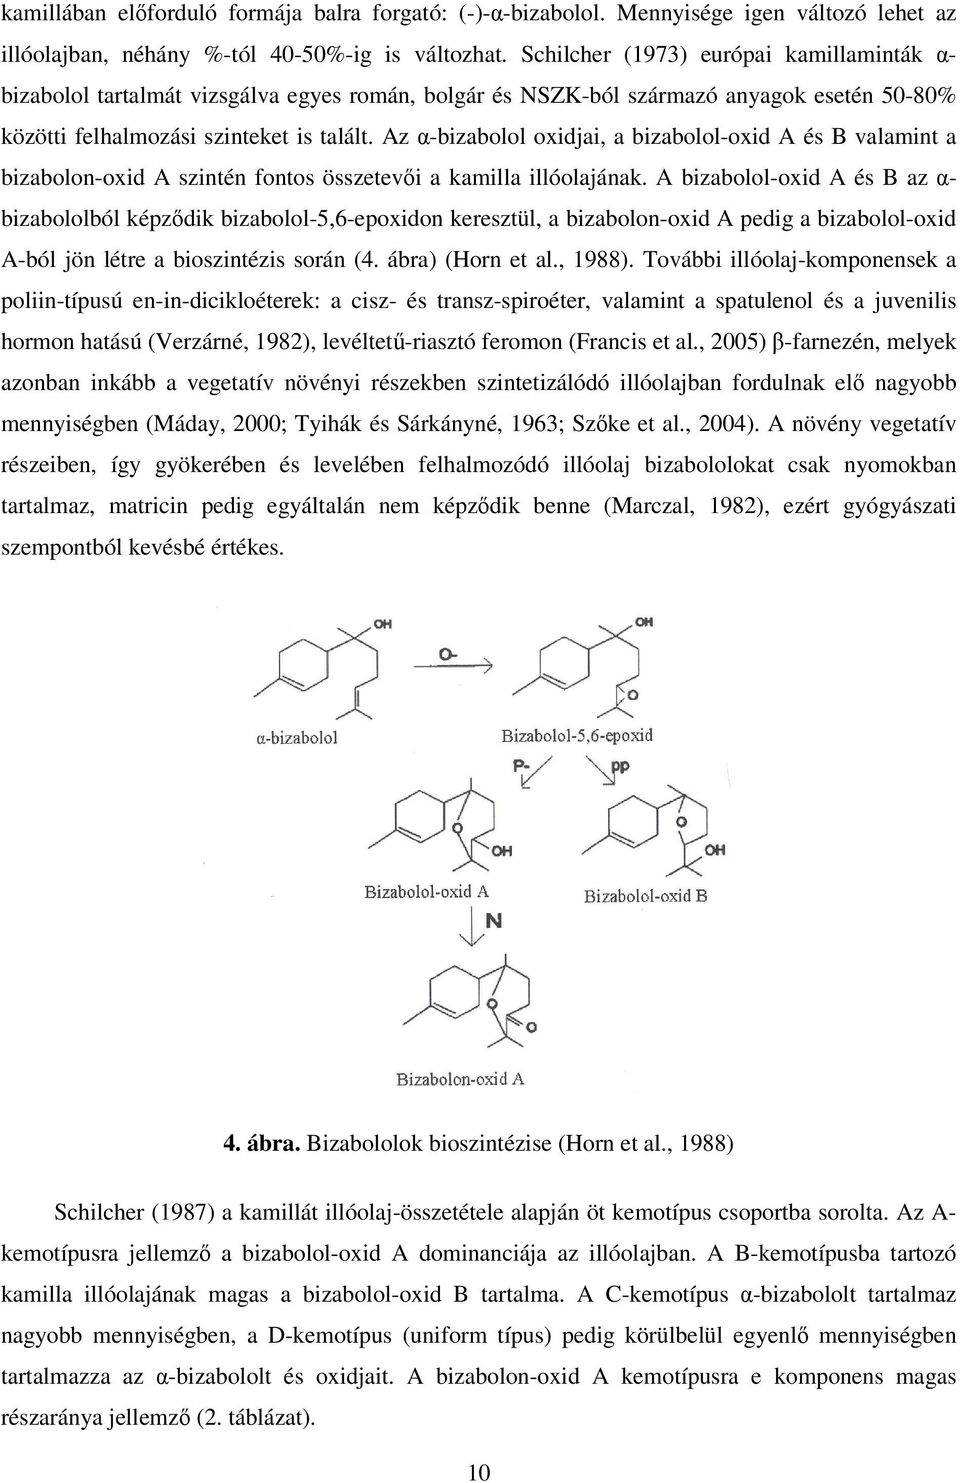 Az α-bizabolol oxidjai, a bizabolol-oxid A és B valamint a bizabolon-oxid A szintén fontos összetevői a kamilla illóolajának.